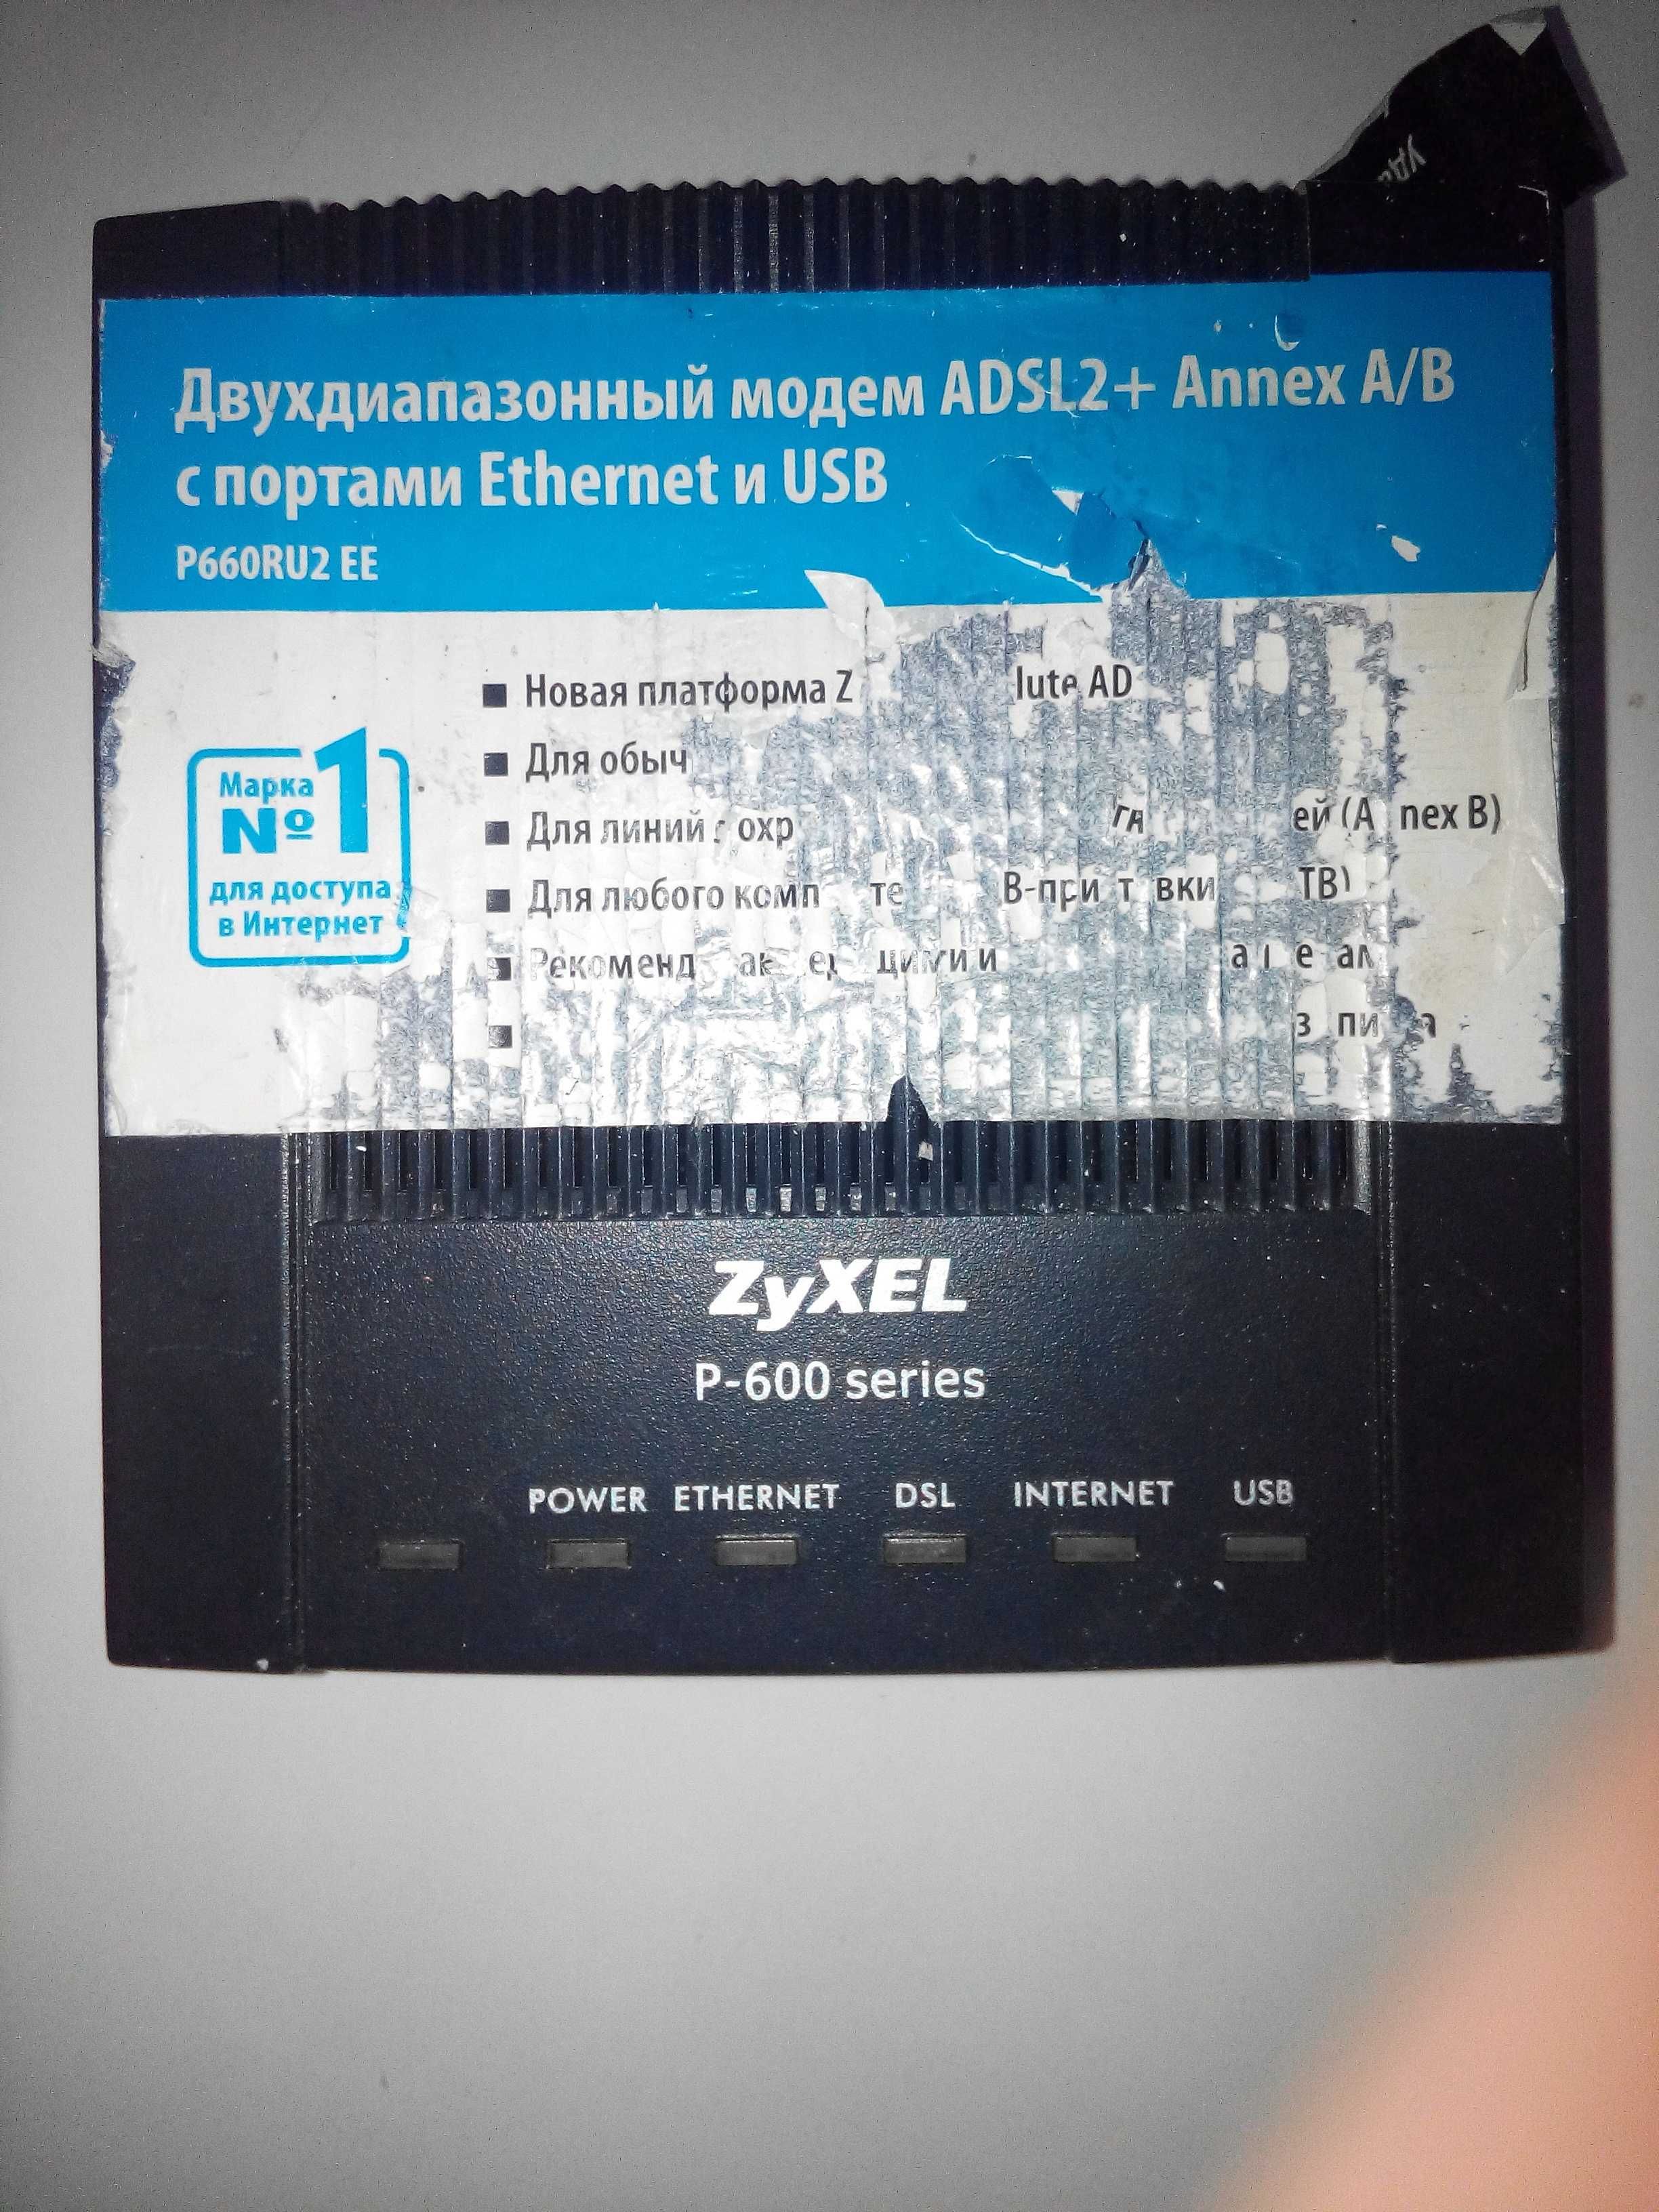 Двухдиапазонный модем ADSL2+ Annex A/B с портами Ethernet и USB